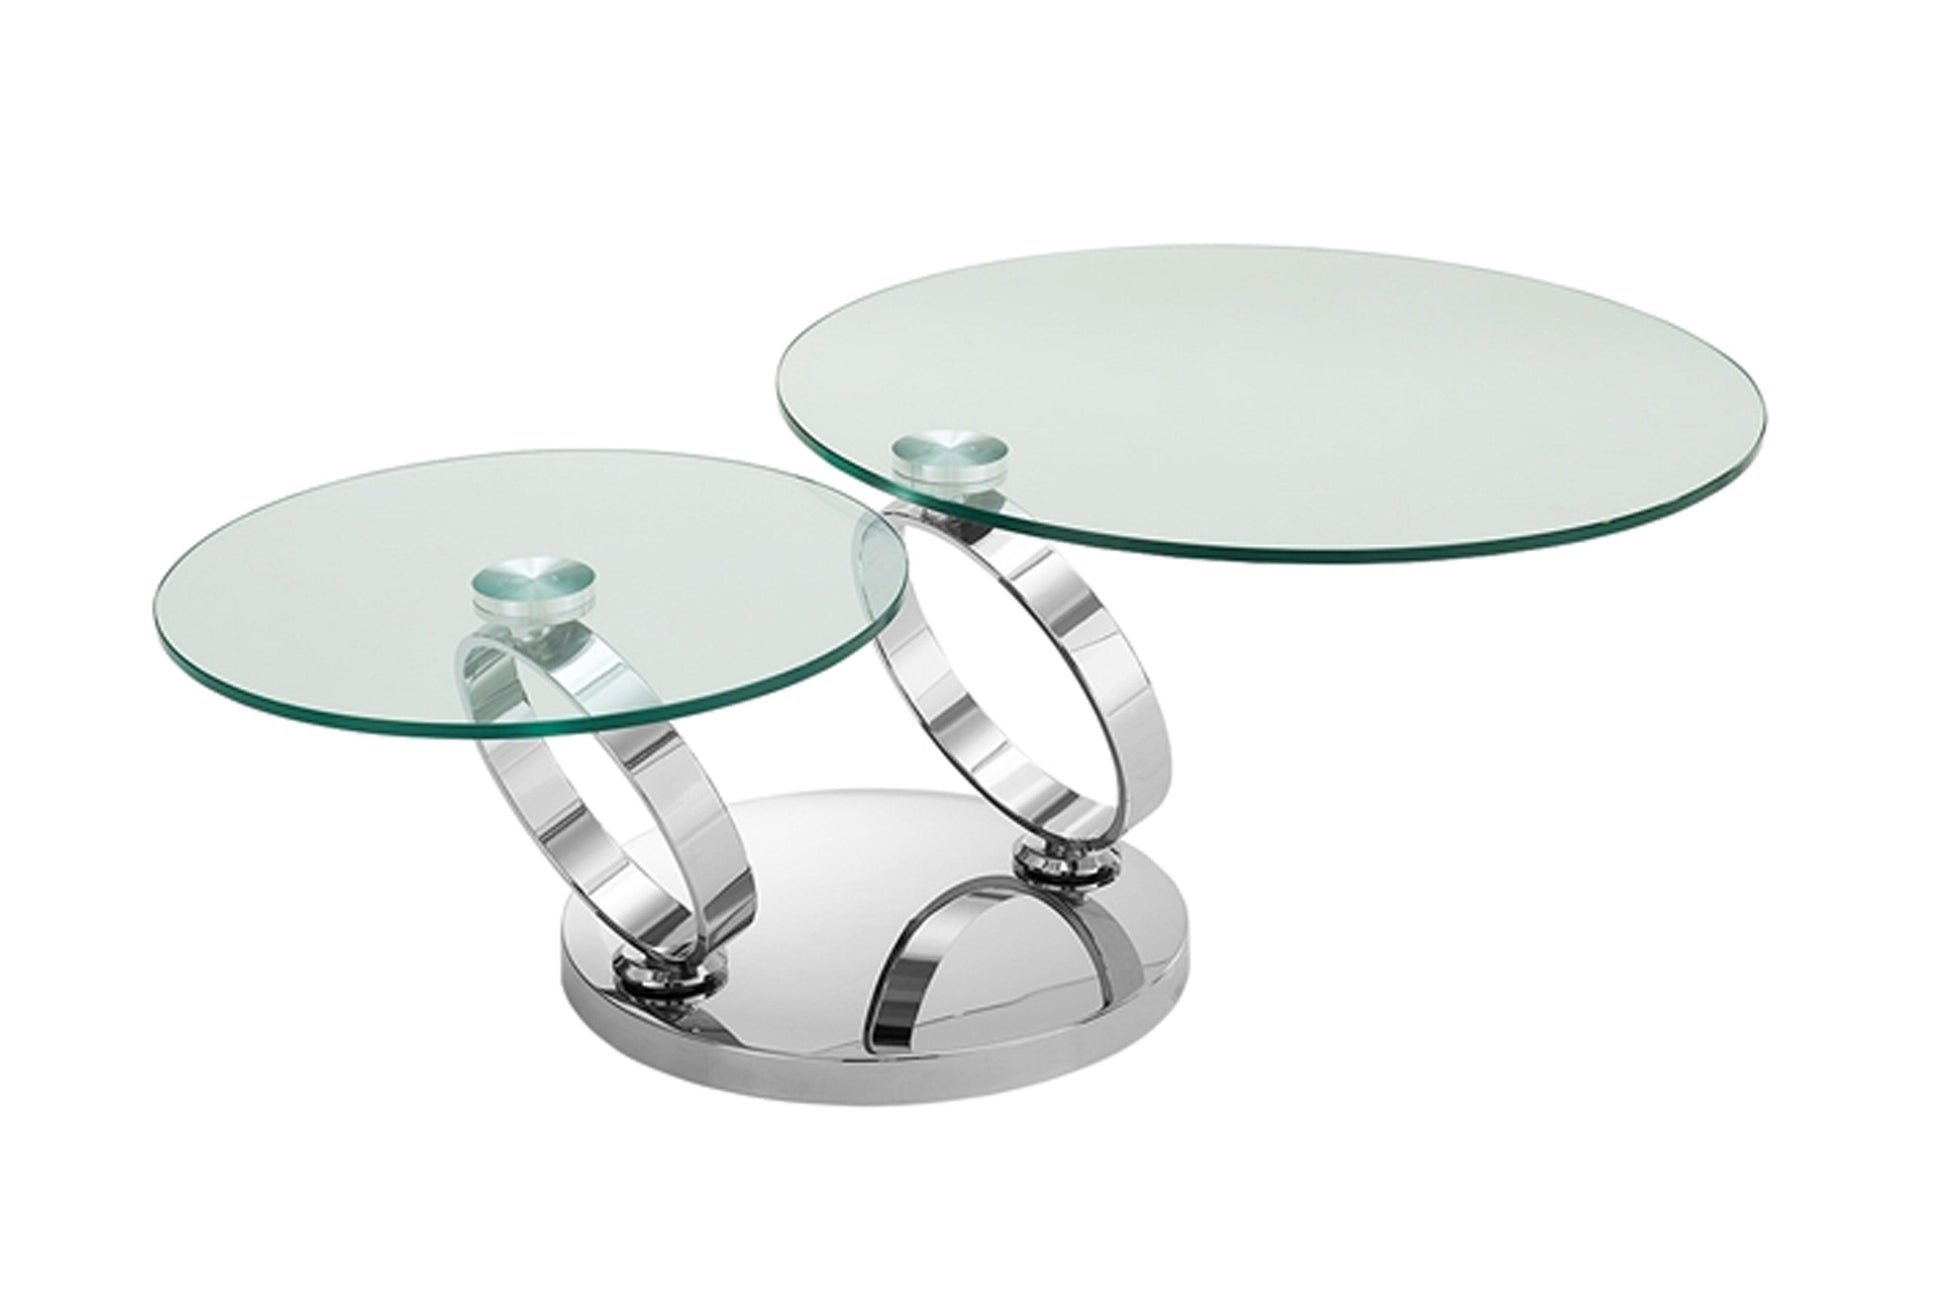 Satellite Coffee table Model CB-129 - Venini Furniture 